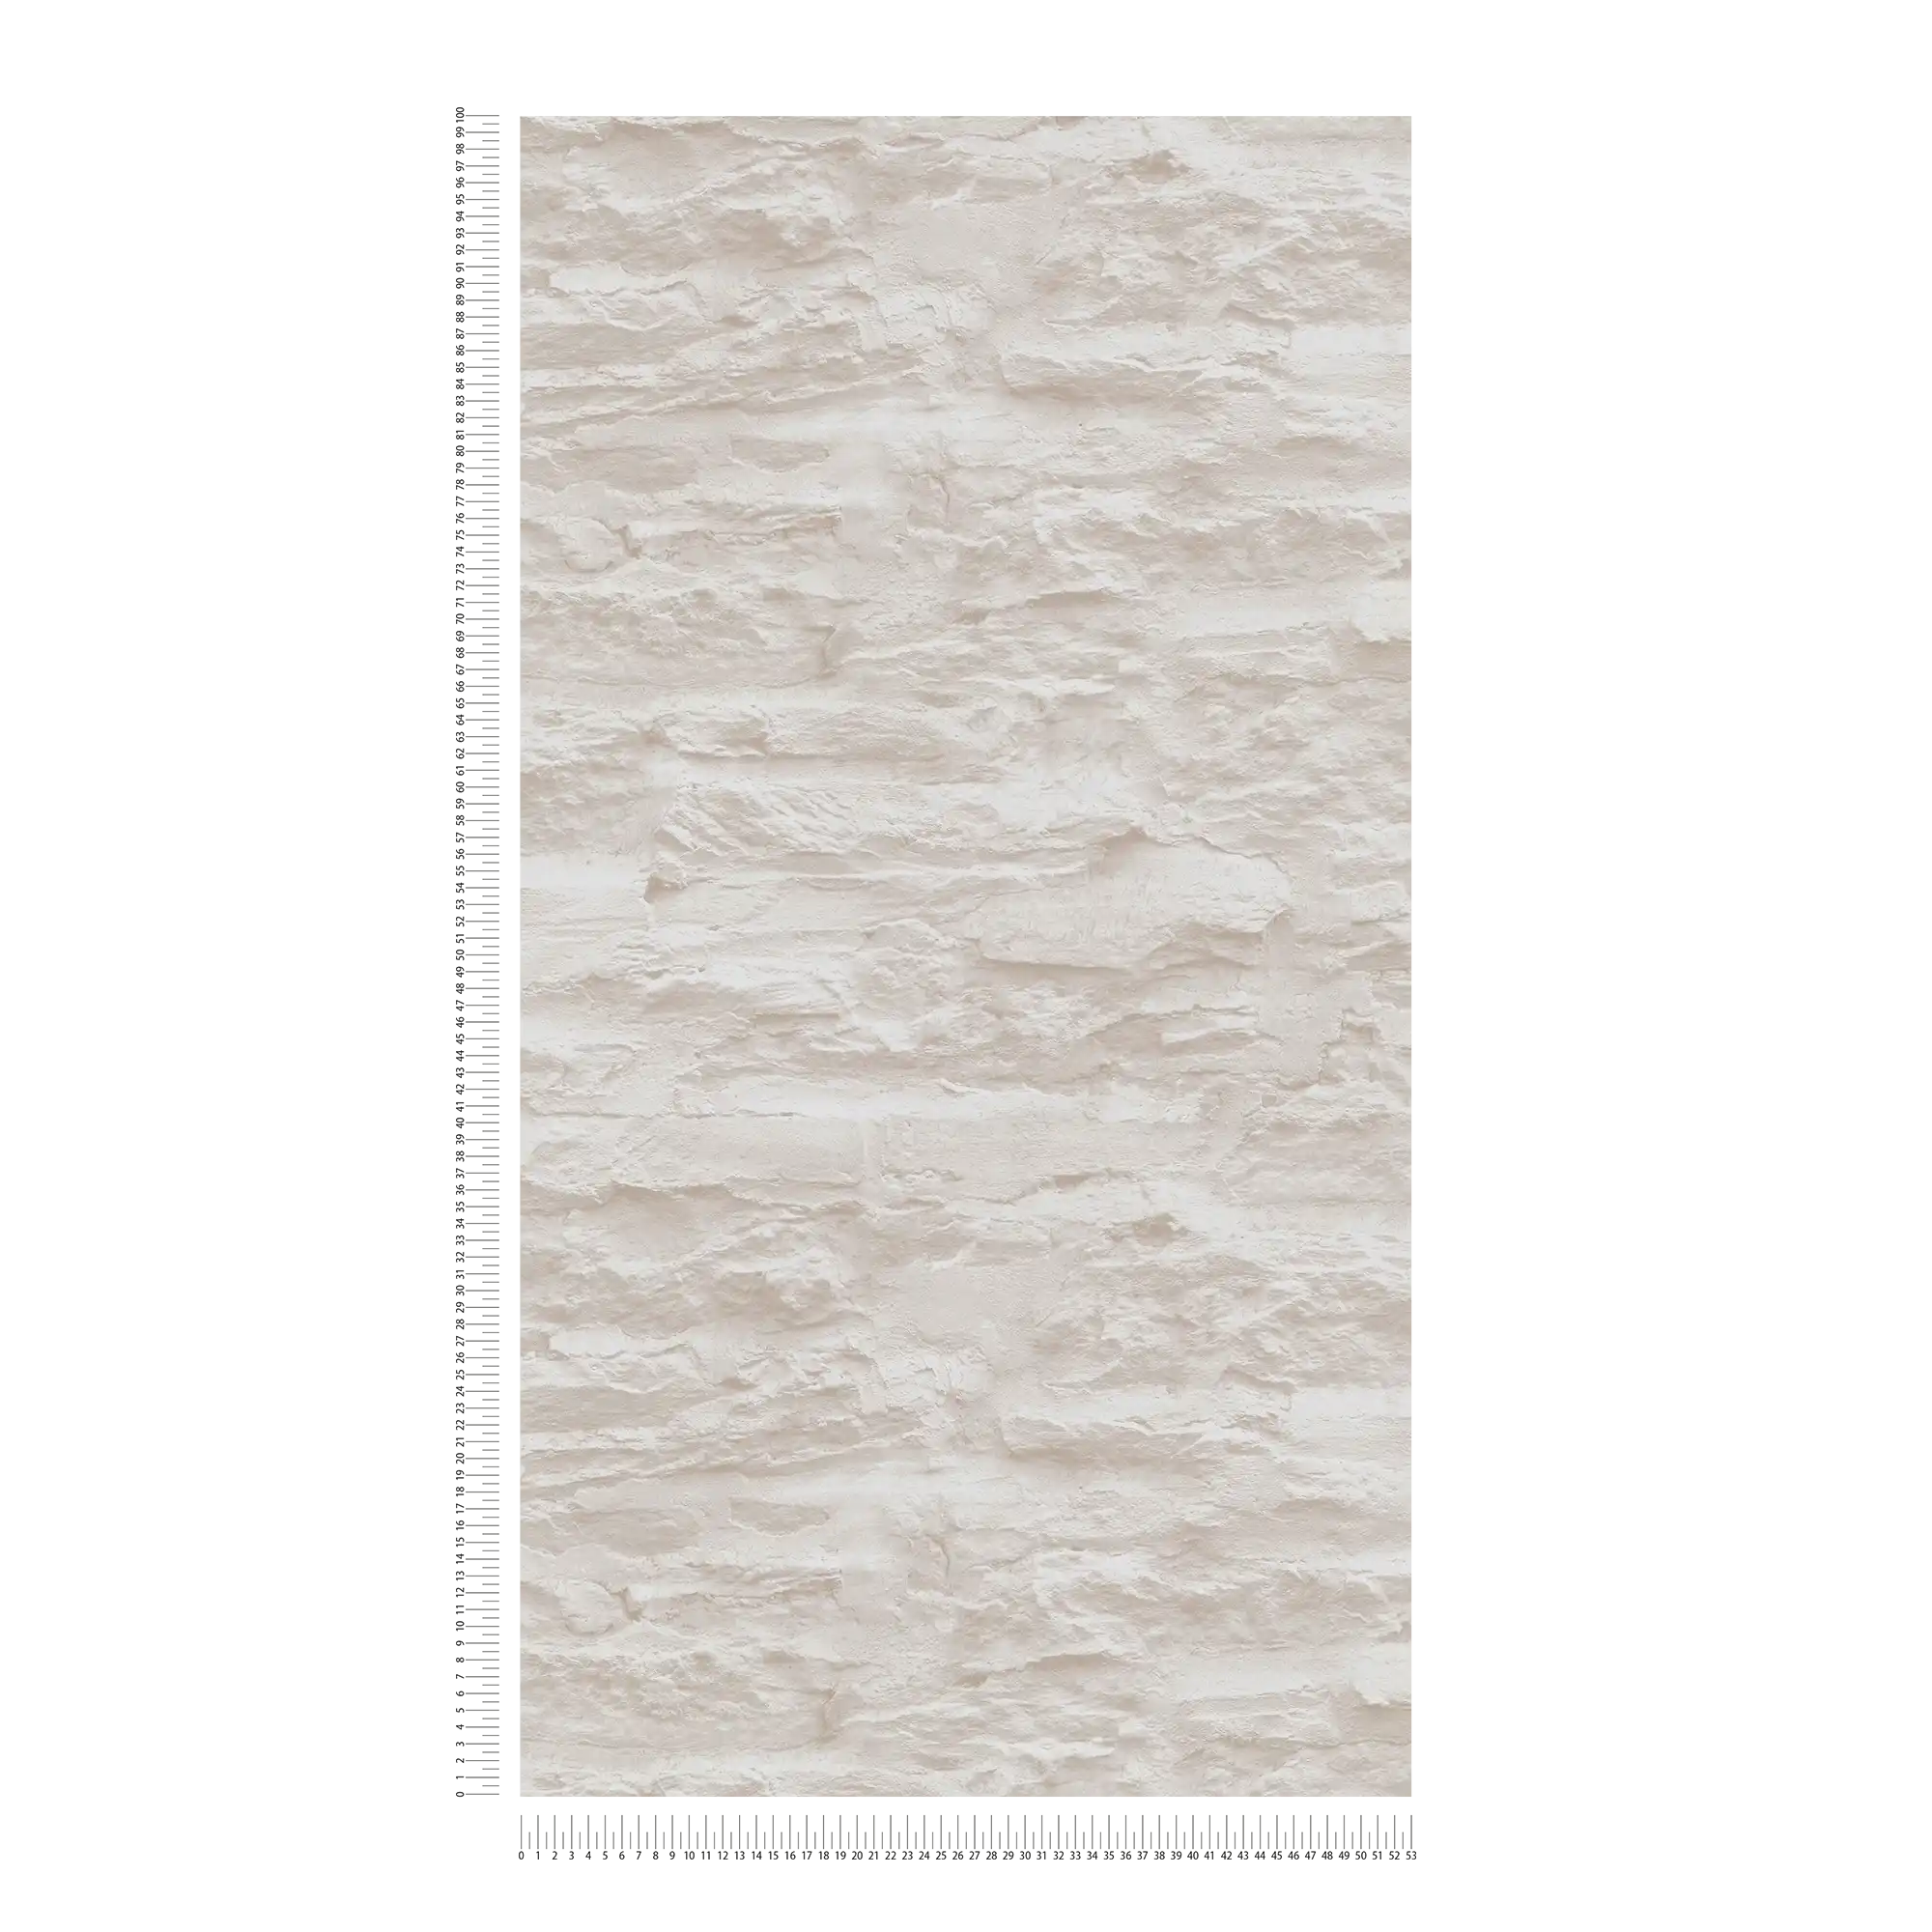             Papier peint adhésif | aspect mur avec pierre naturelle & crépi - crème, blanc
        